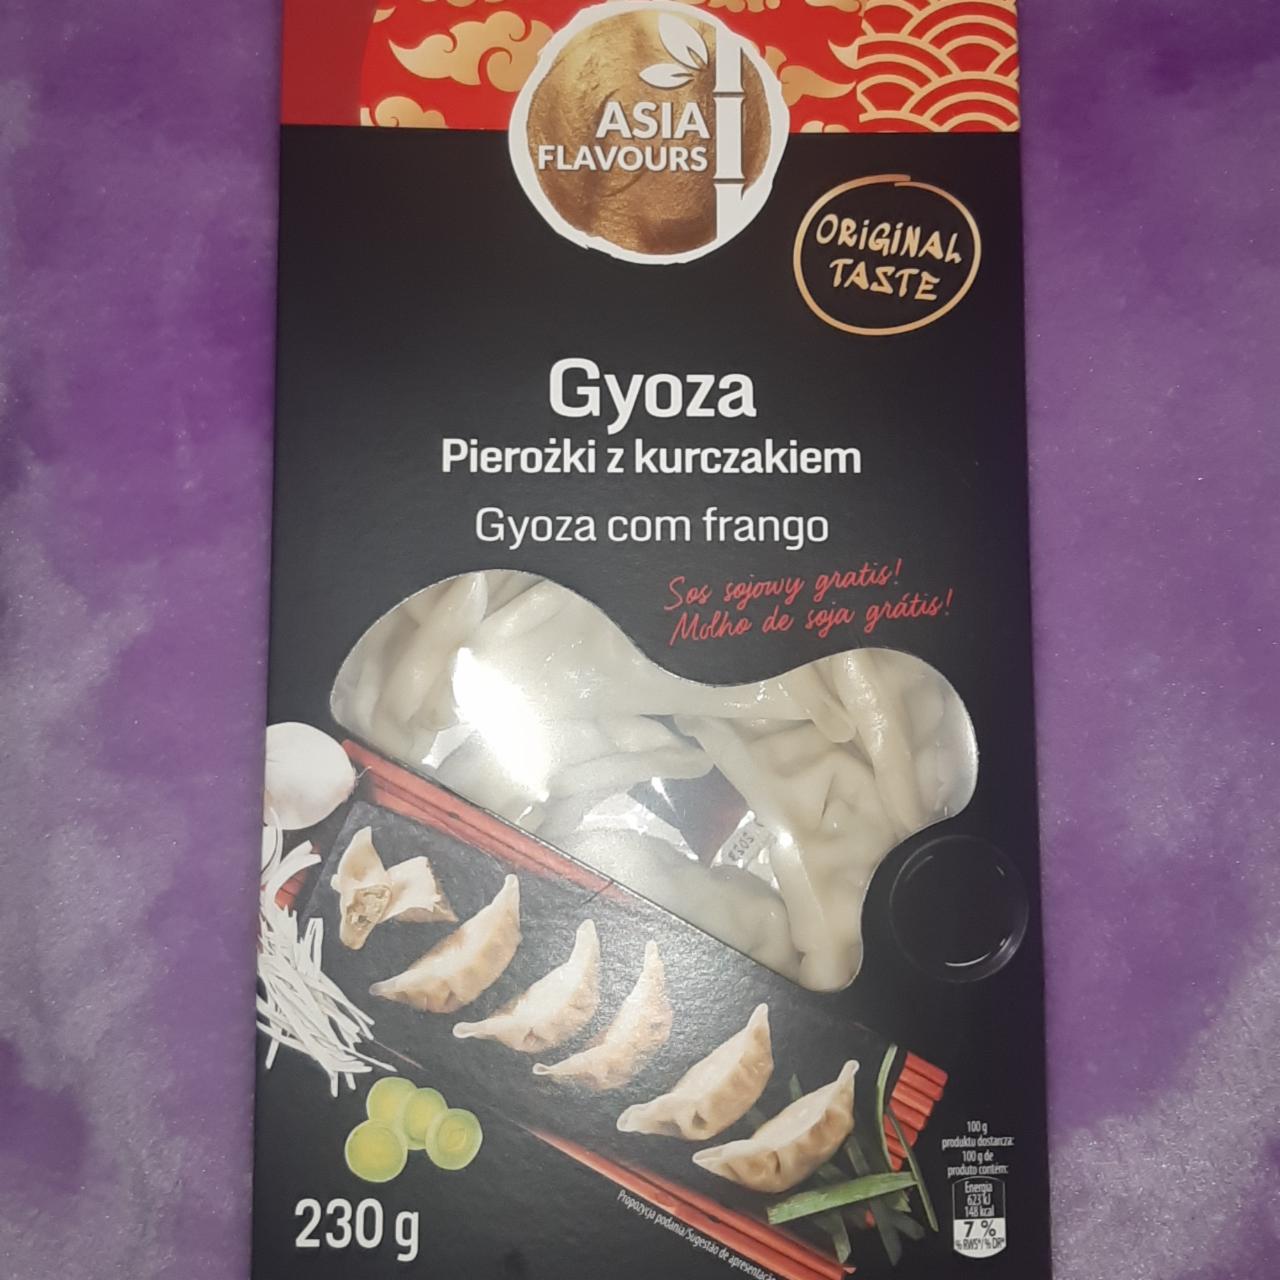 Фото - Пельмени с курицей Гиоза Gyoza z kurczakiem Asia Flavours